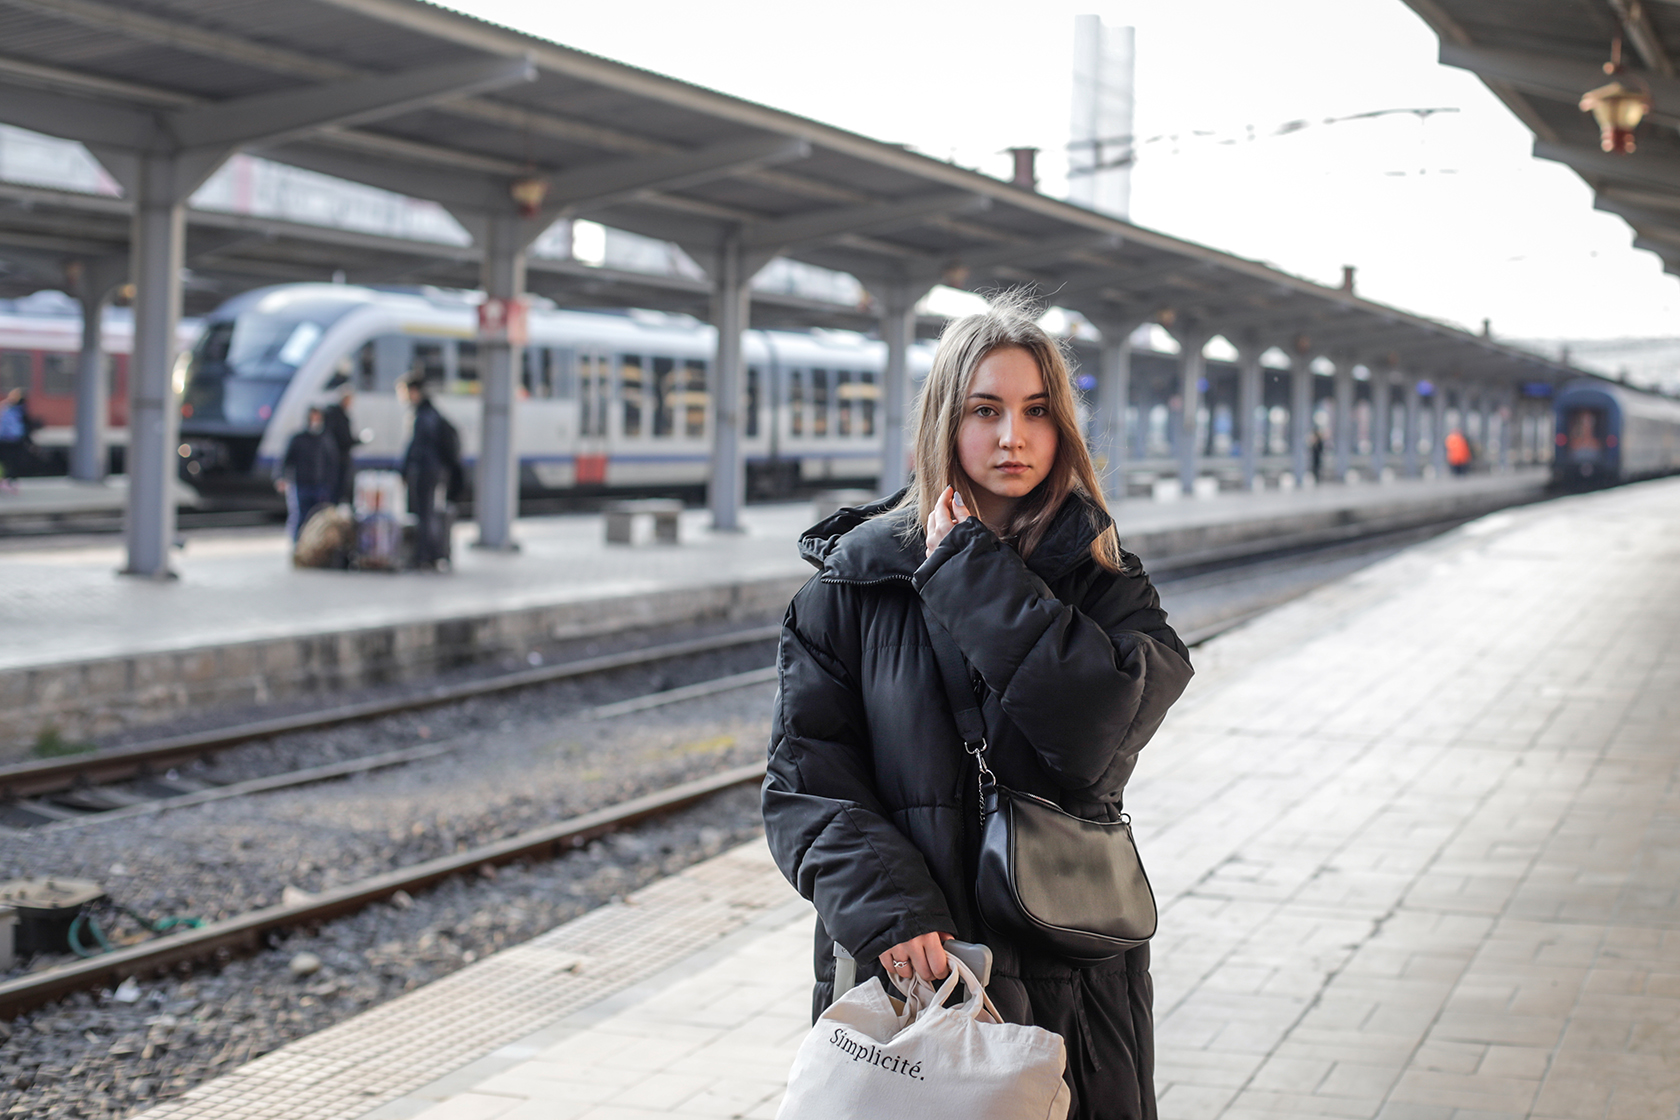 16-årige Katy er flygtet fra Ukraine: ”Der er mange, der vil hjælpe os”